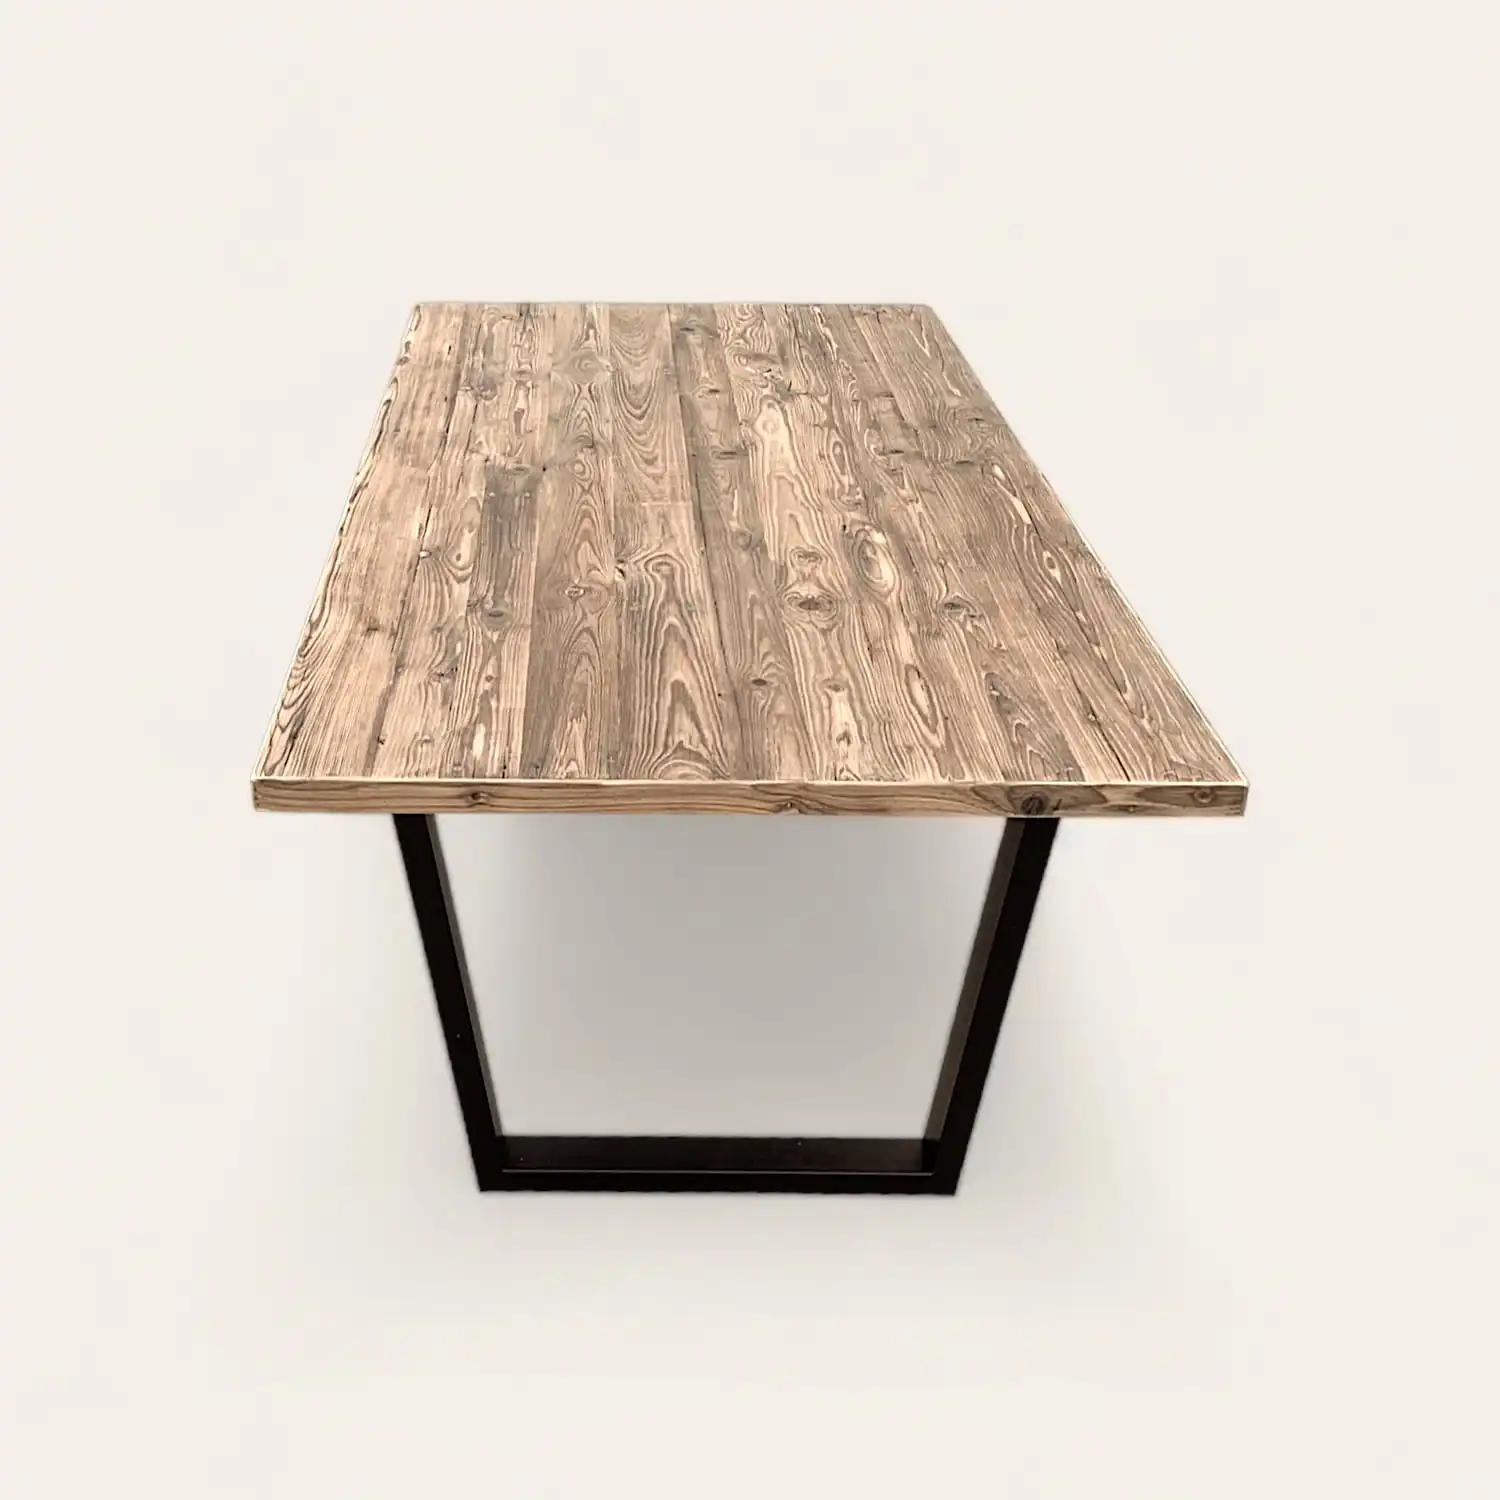  Table à manger en bois rustique avec un piètement en métal noir. 